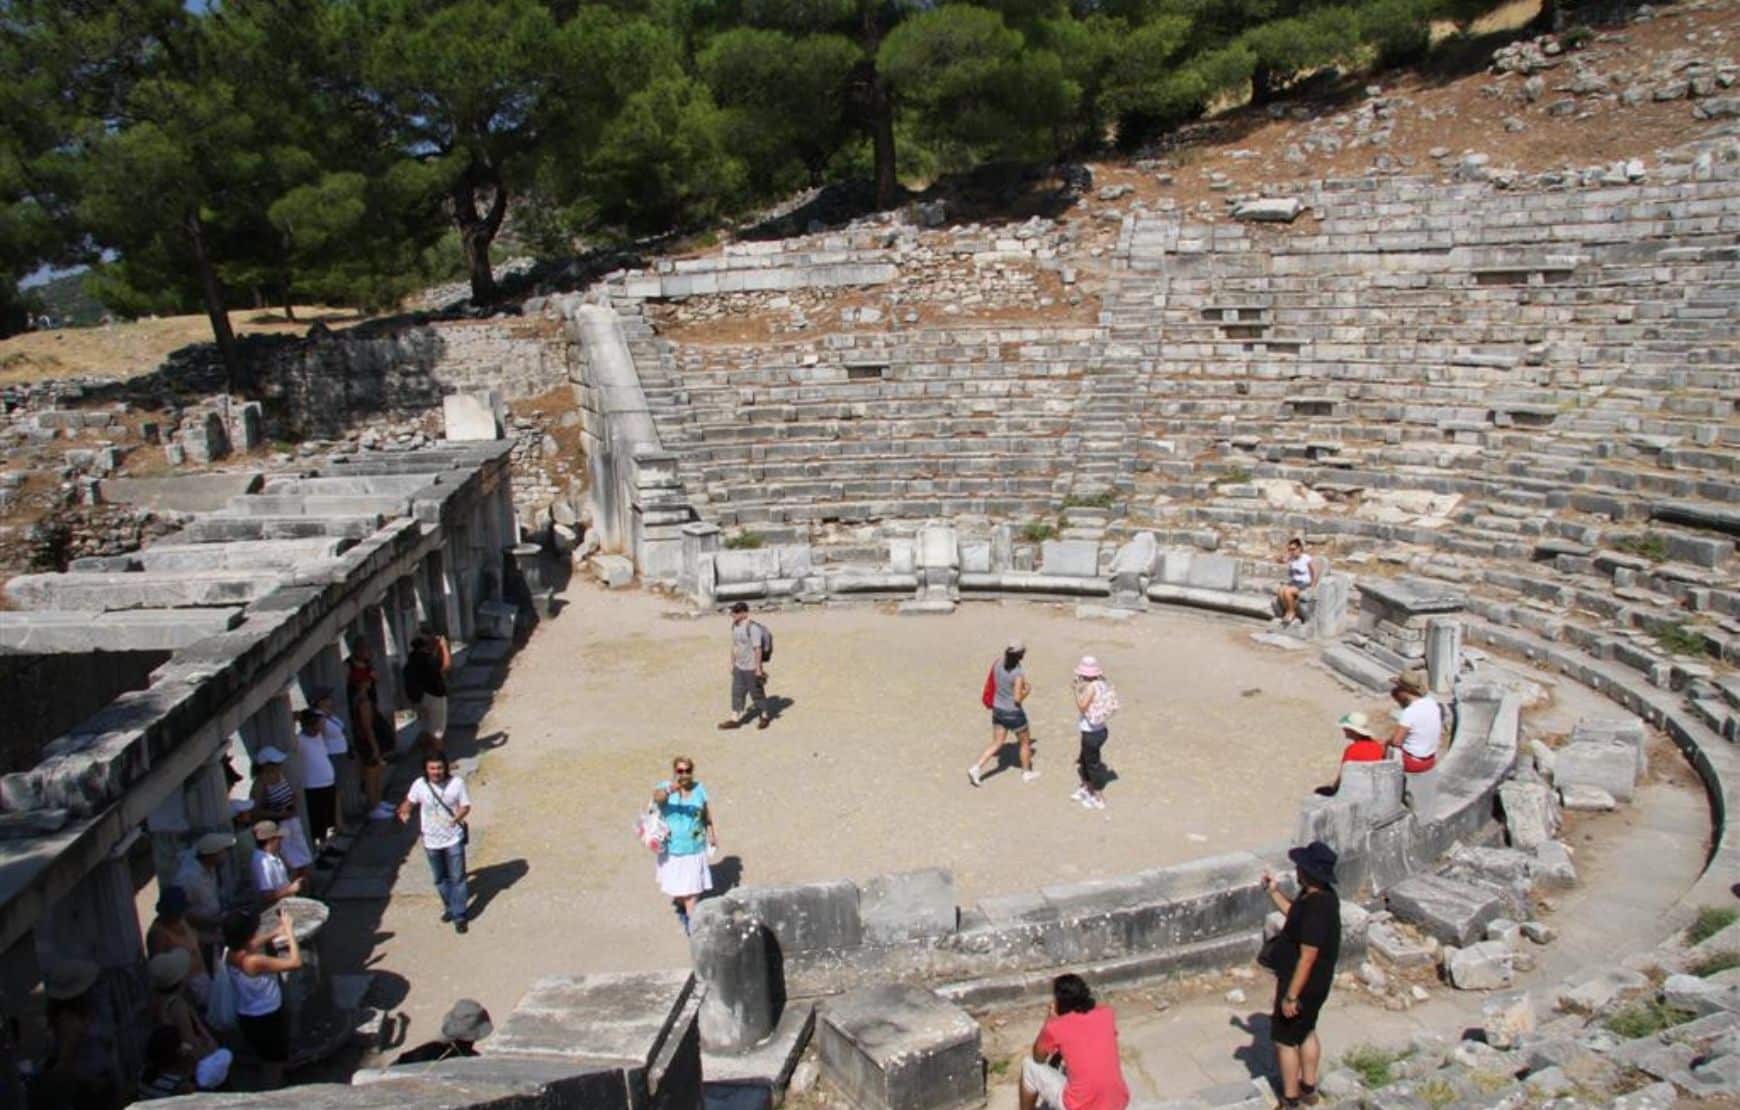 Priene, Miletus and Didyma Private Tour from Kusadasi - Priene Ancient Theatre